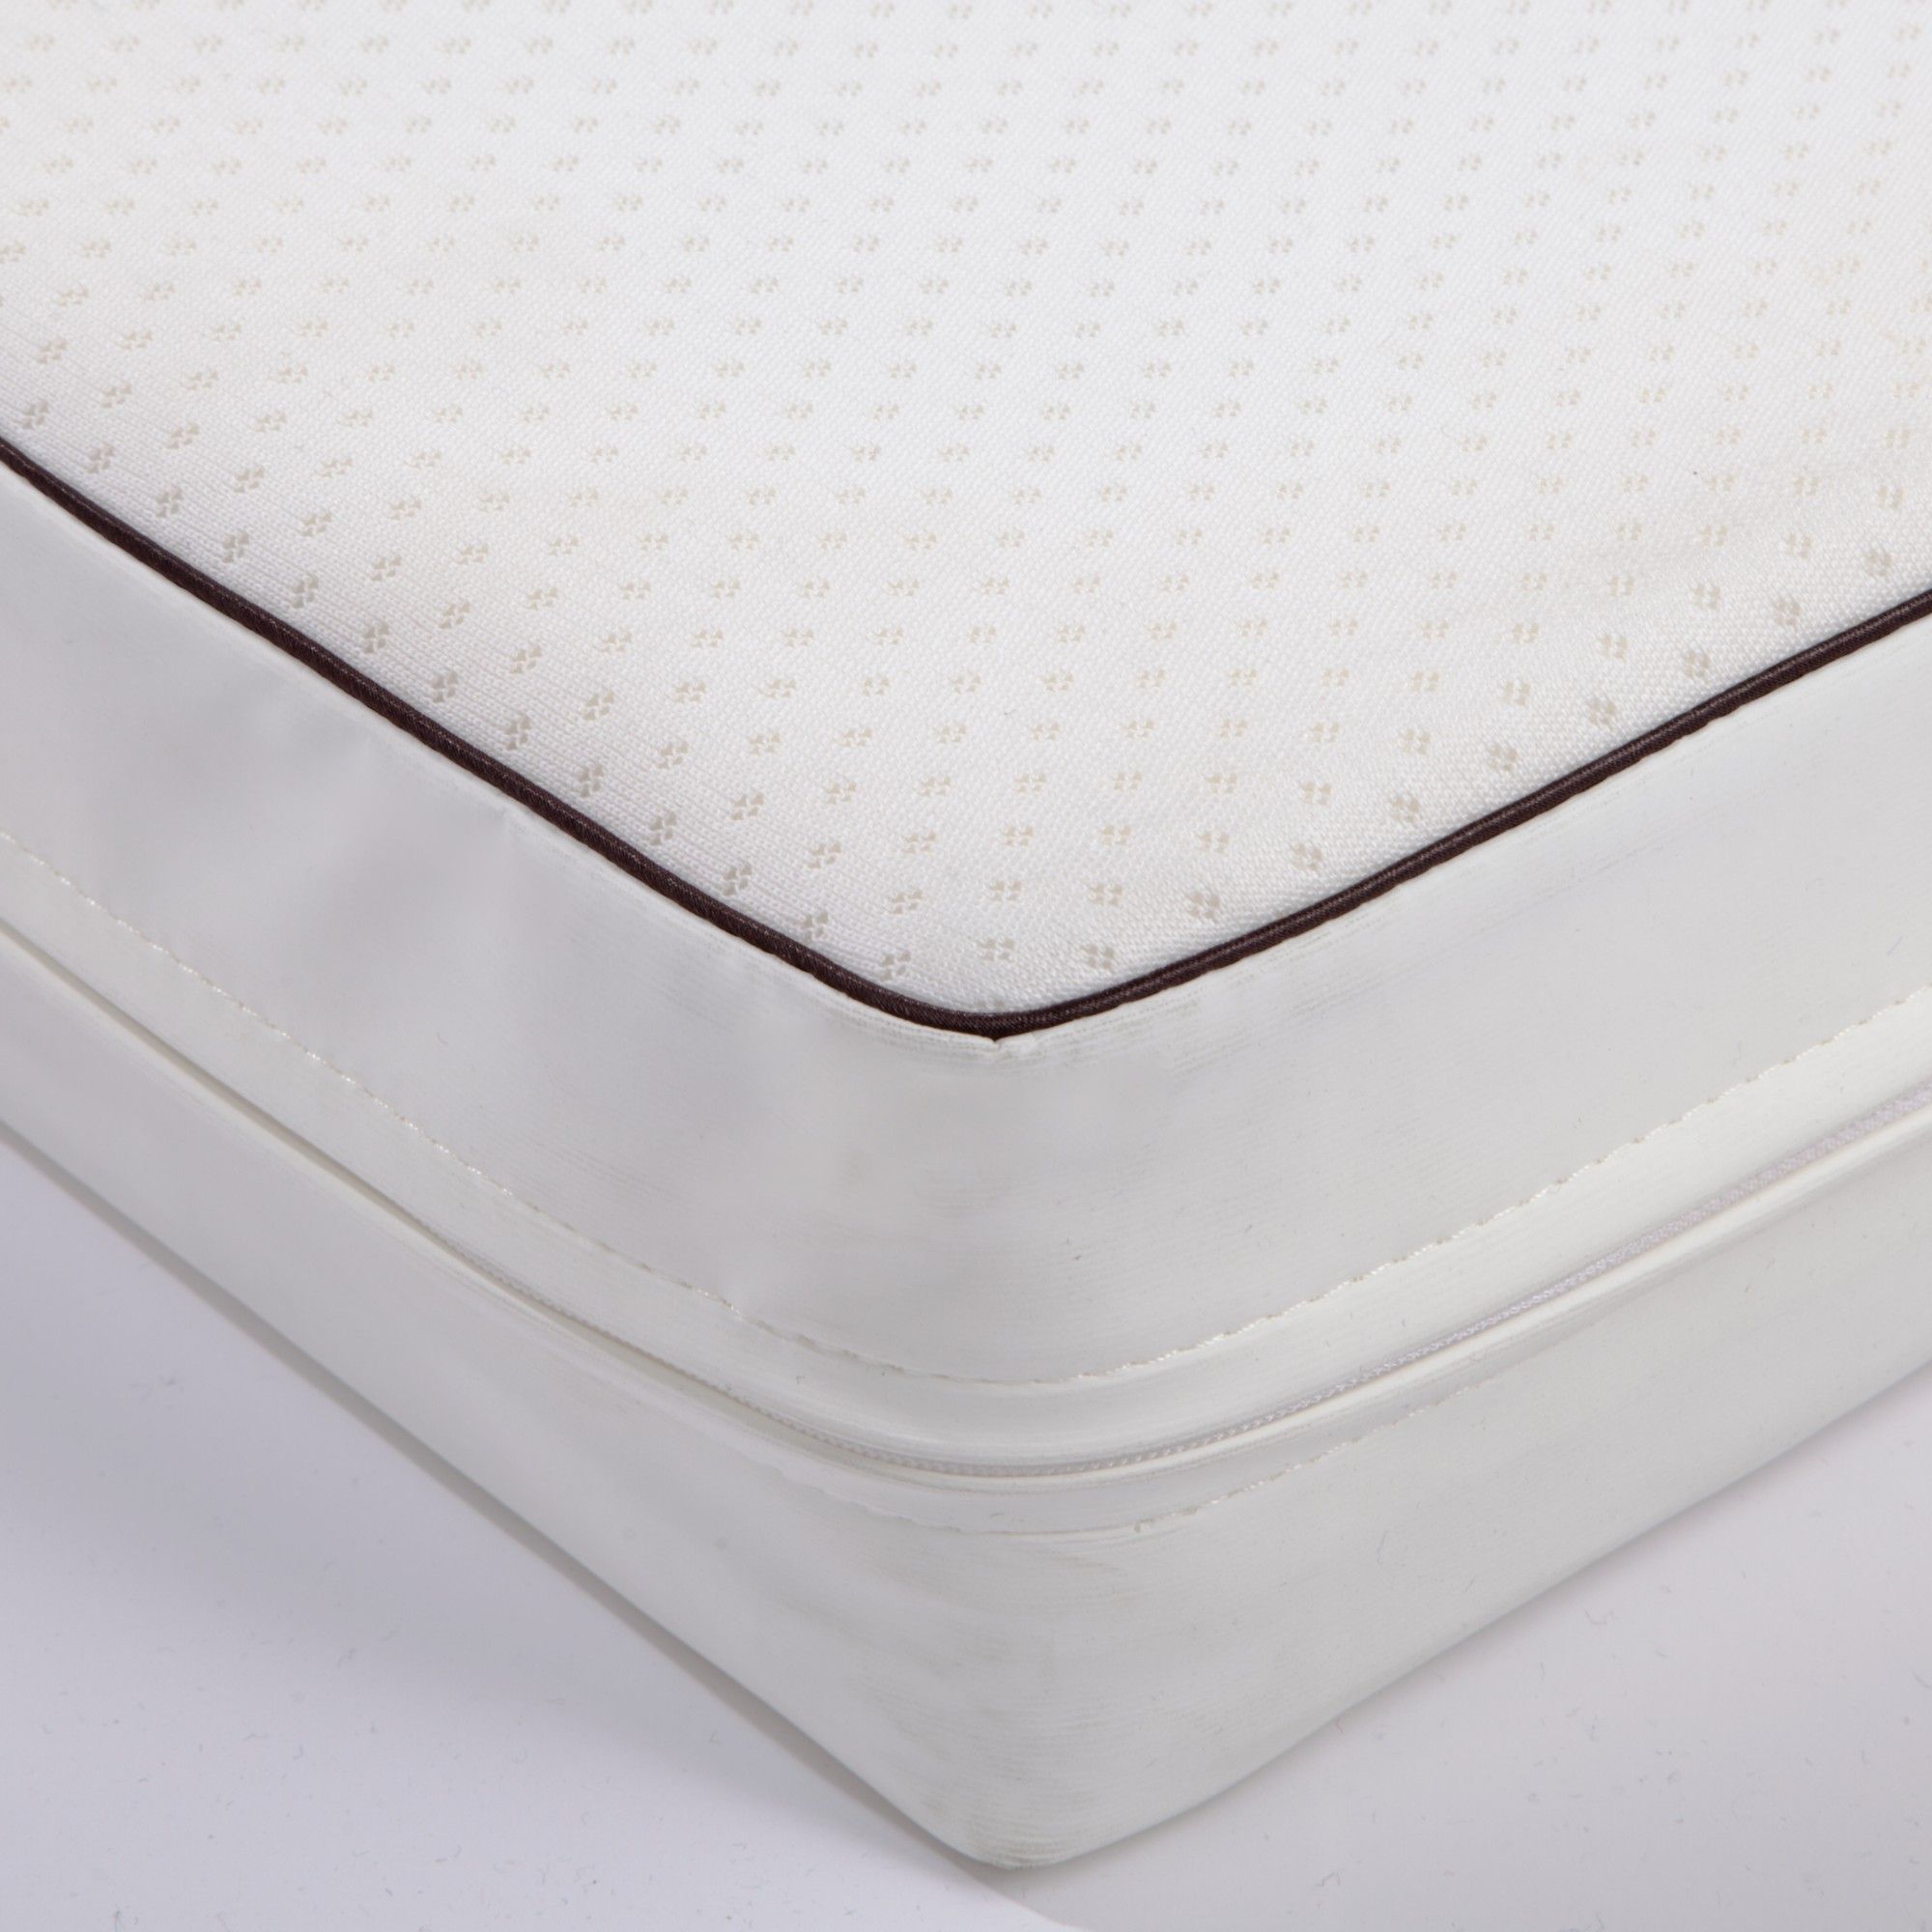 cot bed mattress 120cm x 60cm